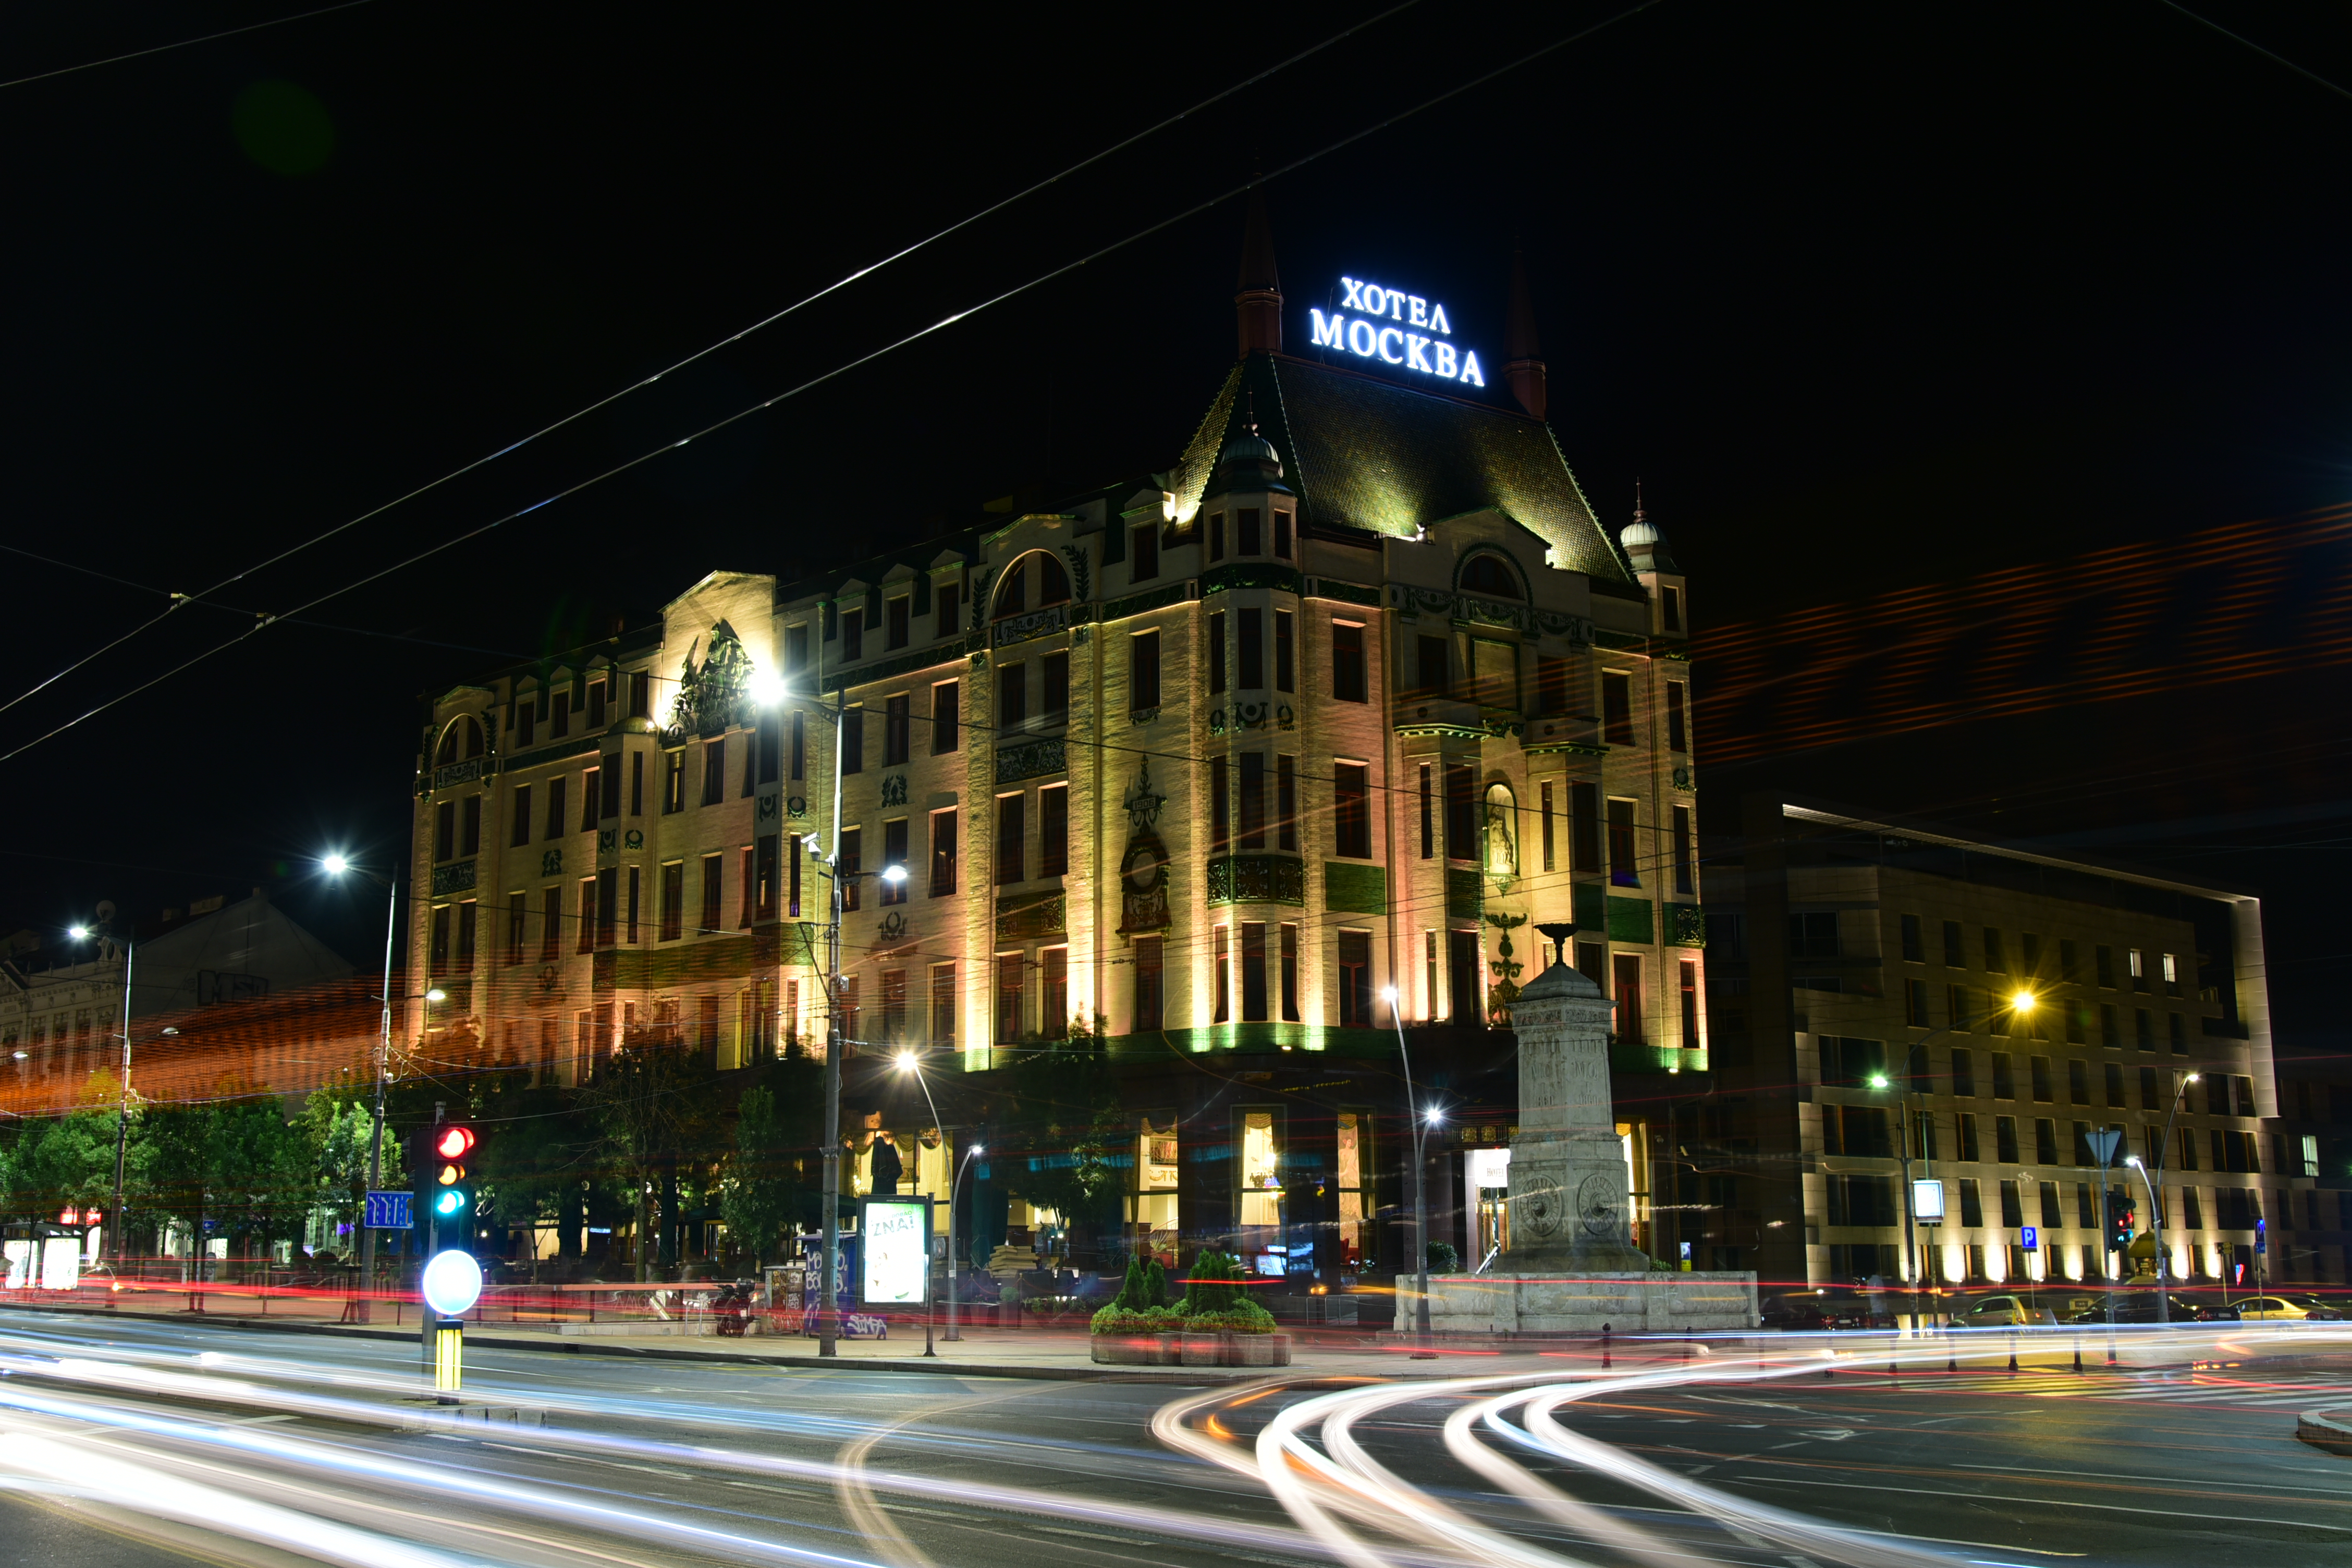 Beograd. Hotel Moskva